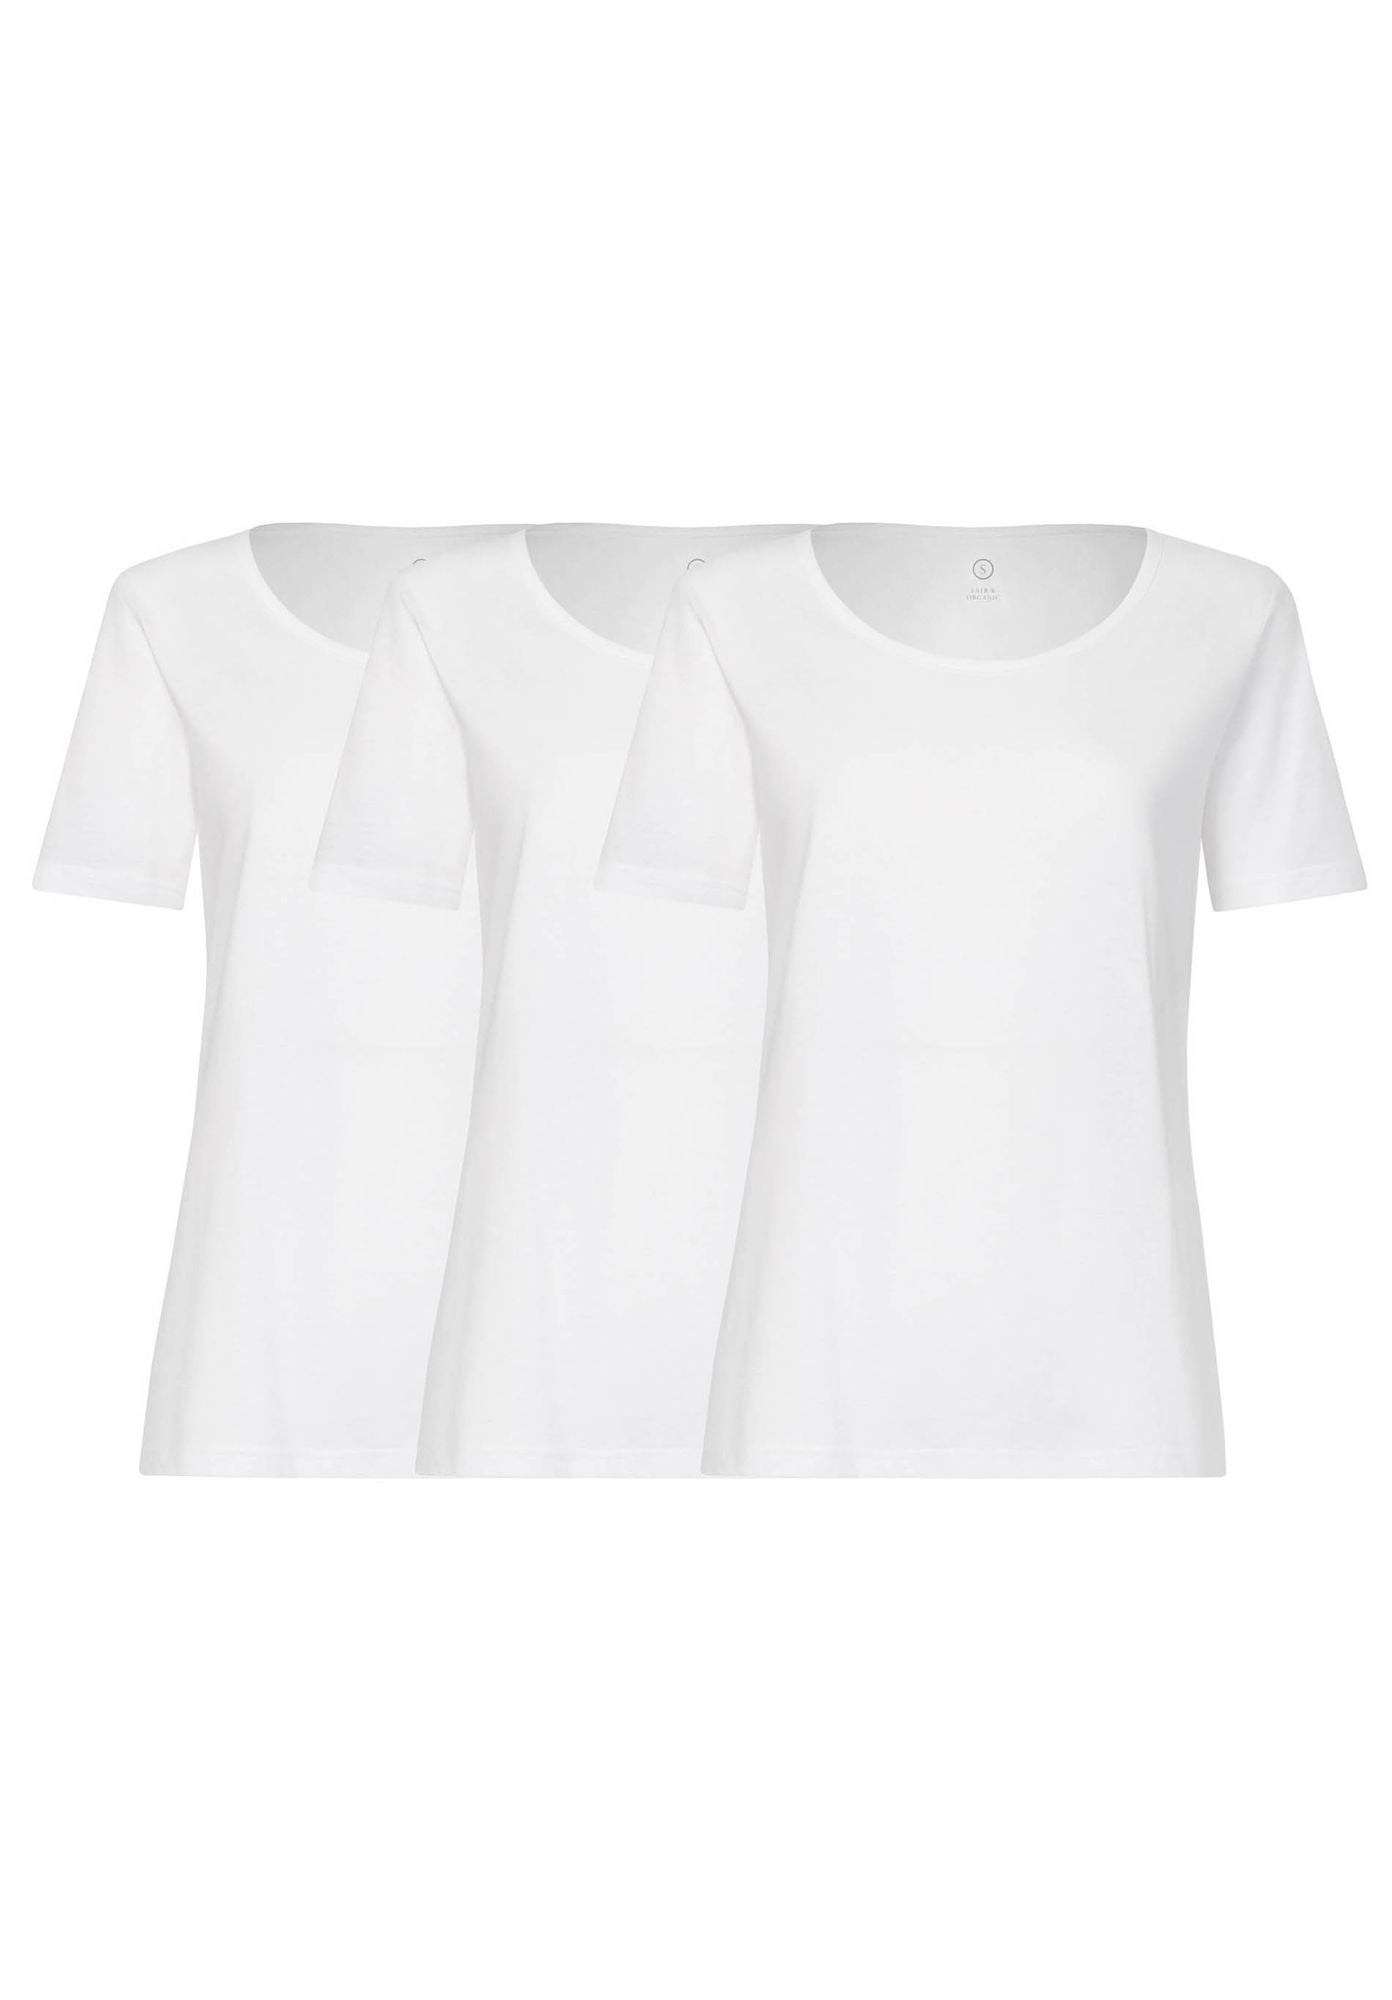 3 Pack BTD64 T-Shirt White (GOTS)